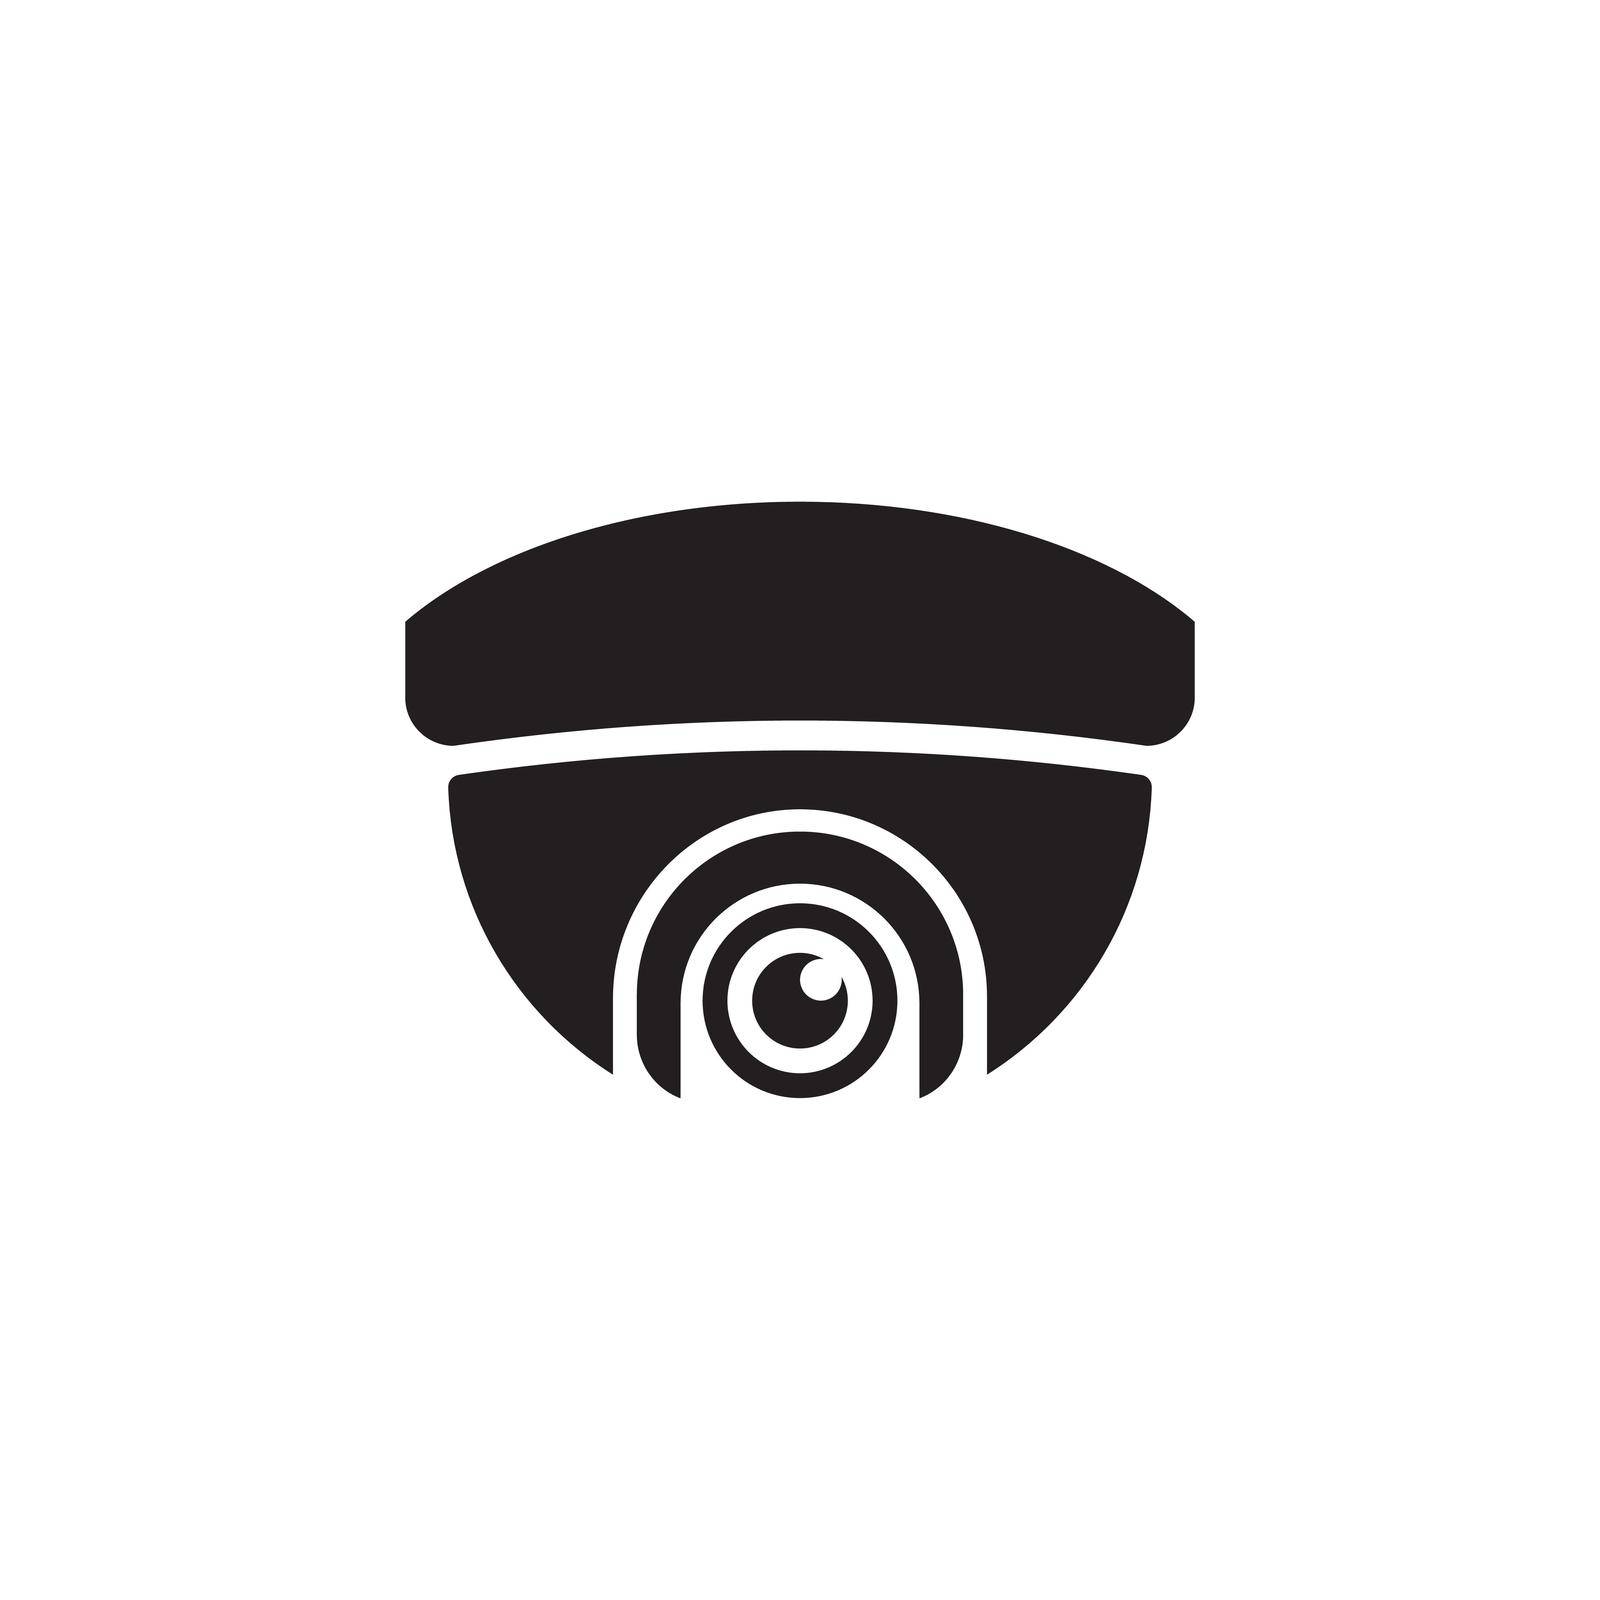 CCTV Vector icon design illustration Template